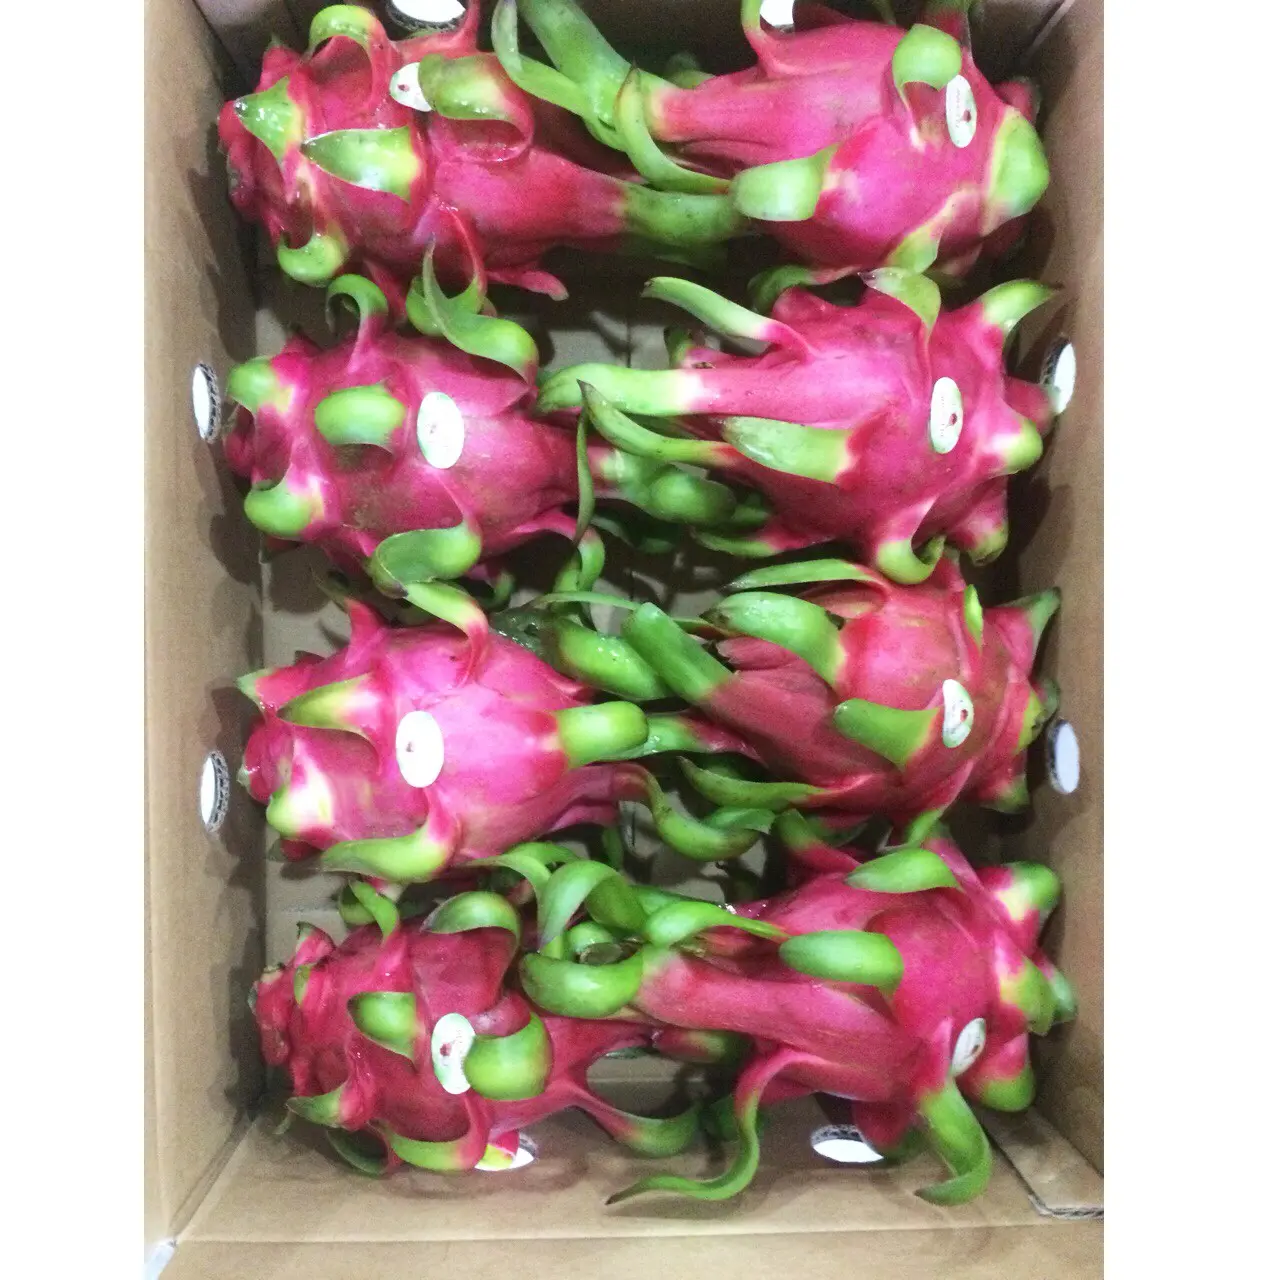 Kartonnen Doos Verpakking Rode En Groene Zoete Smaak Rode Flesh/Wit Vlees Verscheidenheid Dragon Fruit Export Uit Vietnam